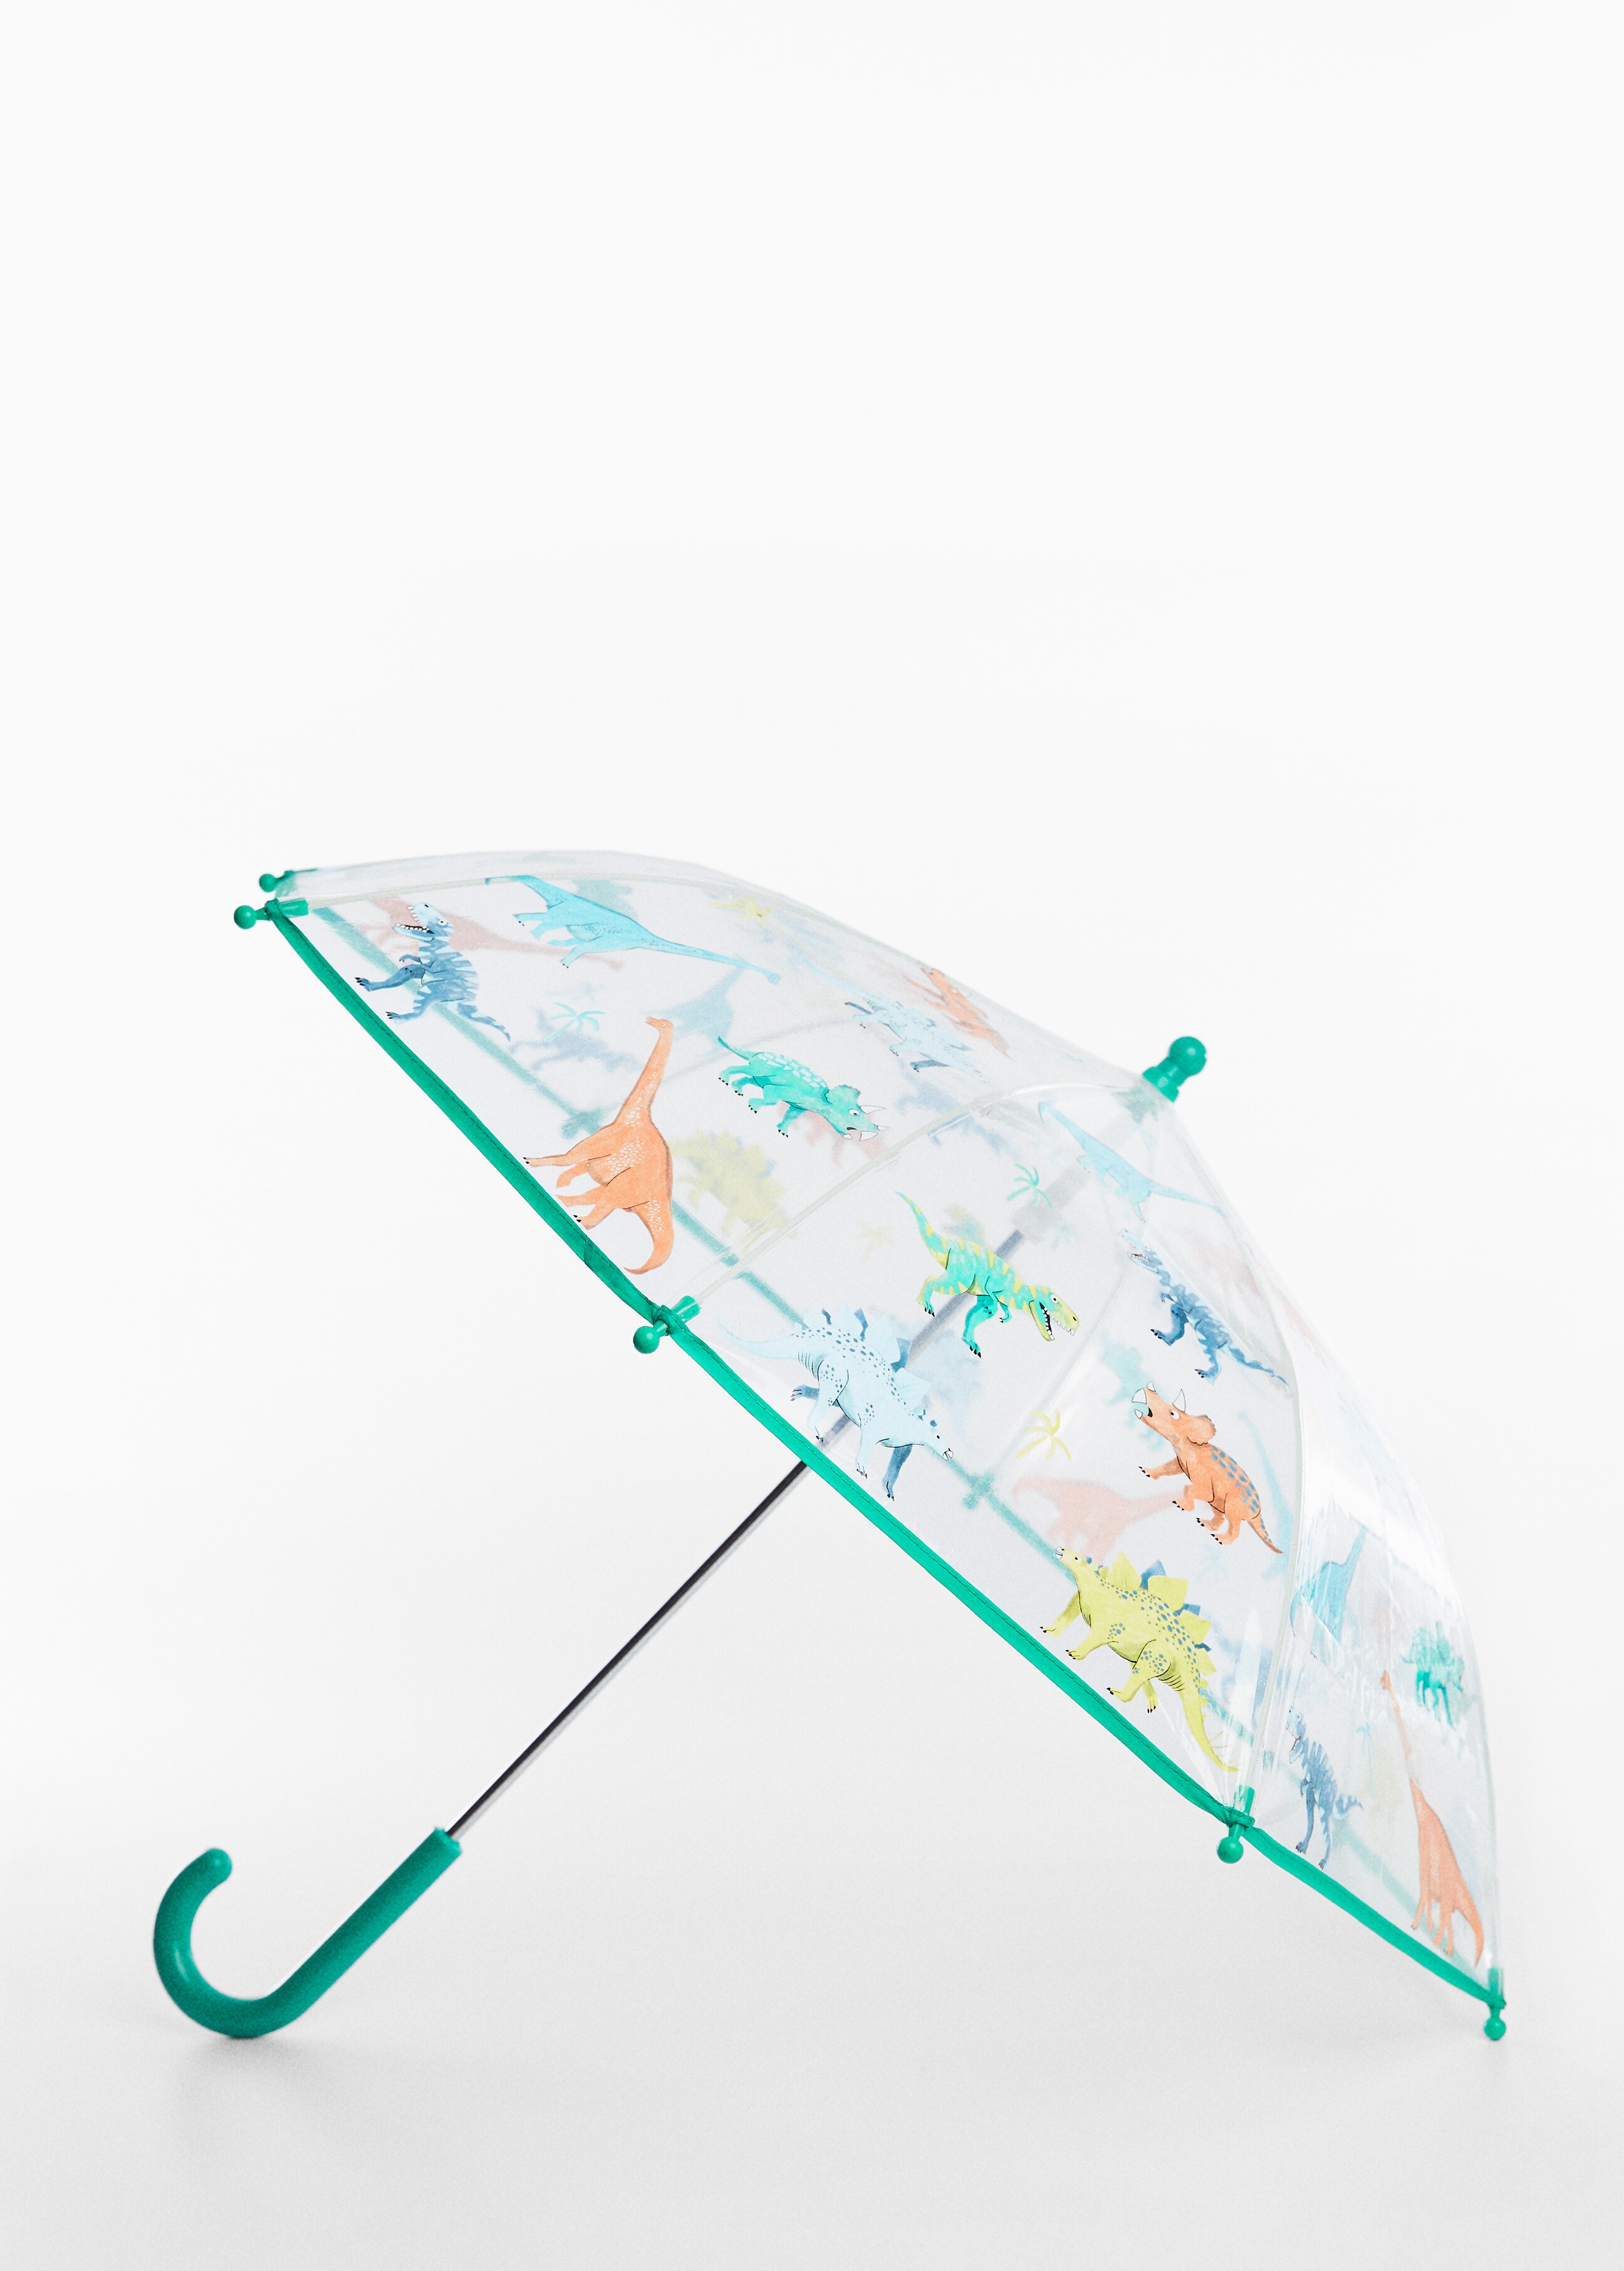 Transparent patterned umbrella - Medium plane